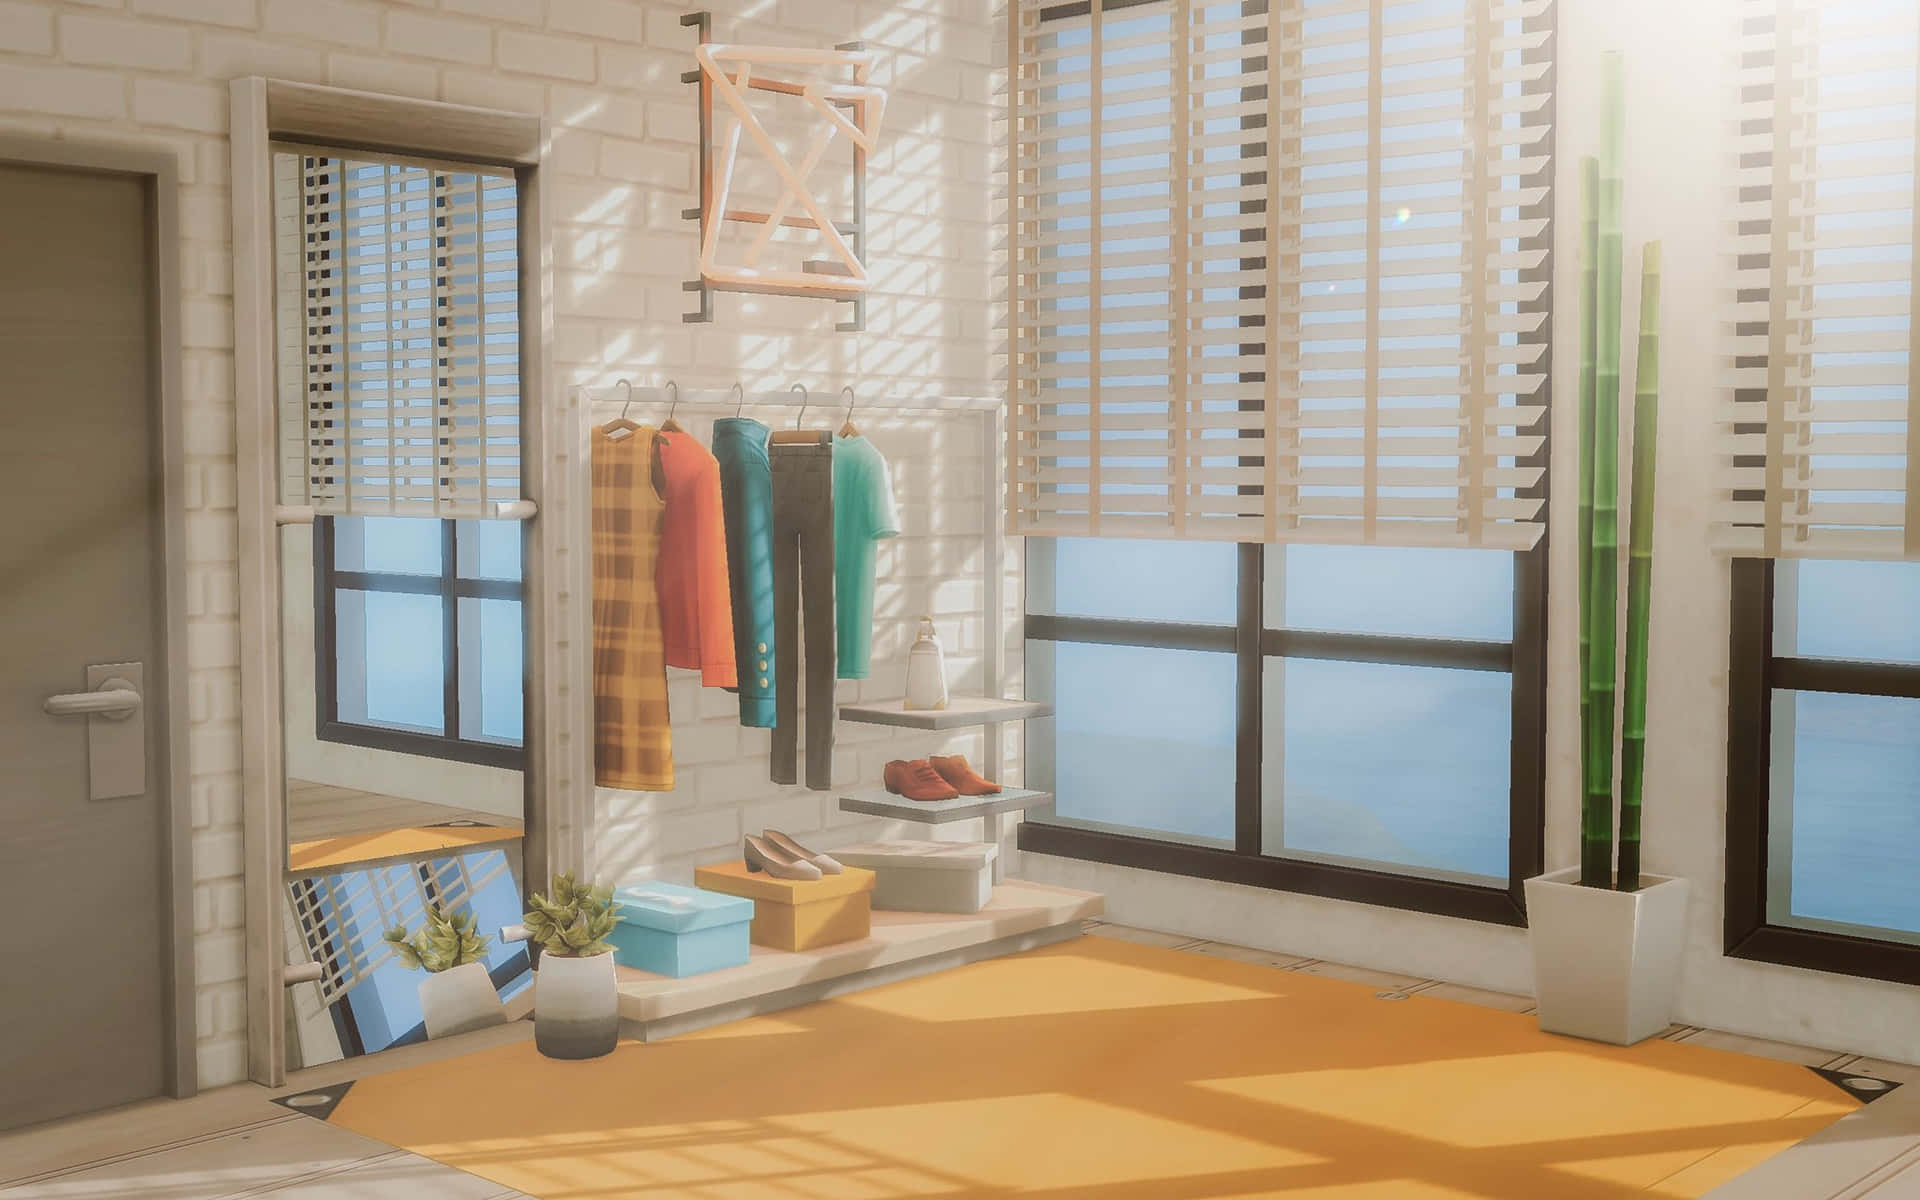 Digitalt billede Dressing Room Sims 4 Cas baggrund: Kontroller en virtuel skabning med dette fantastiske baggrundsbillede!